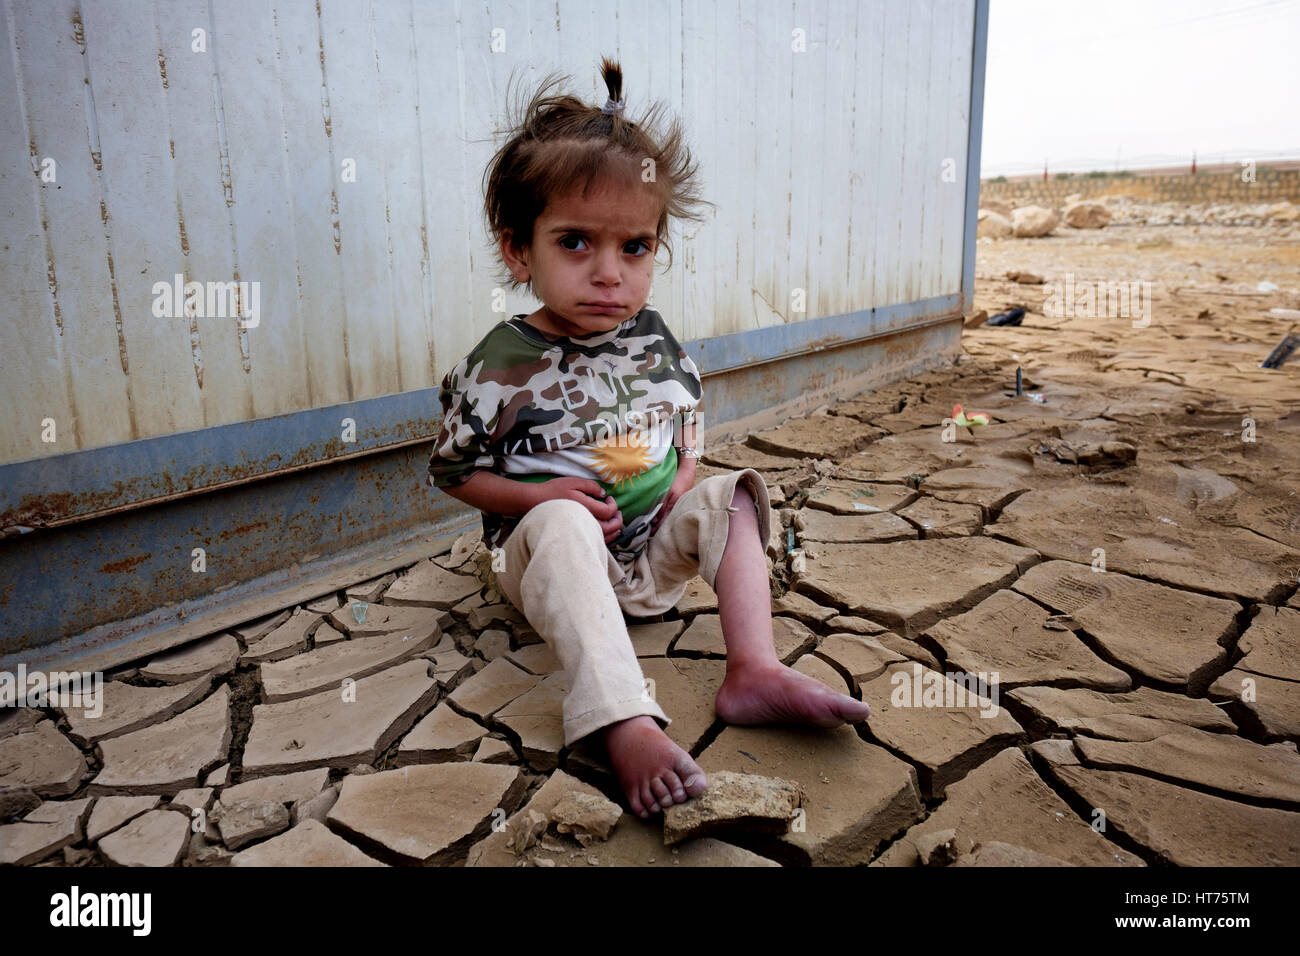 Les réfugiés au camp de réfugiés dans la région kurde du nord de l'Irak Banque D'Images